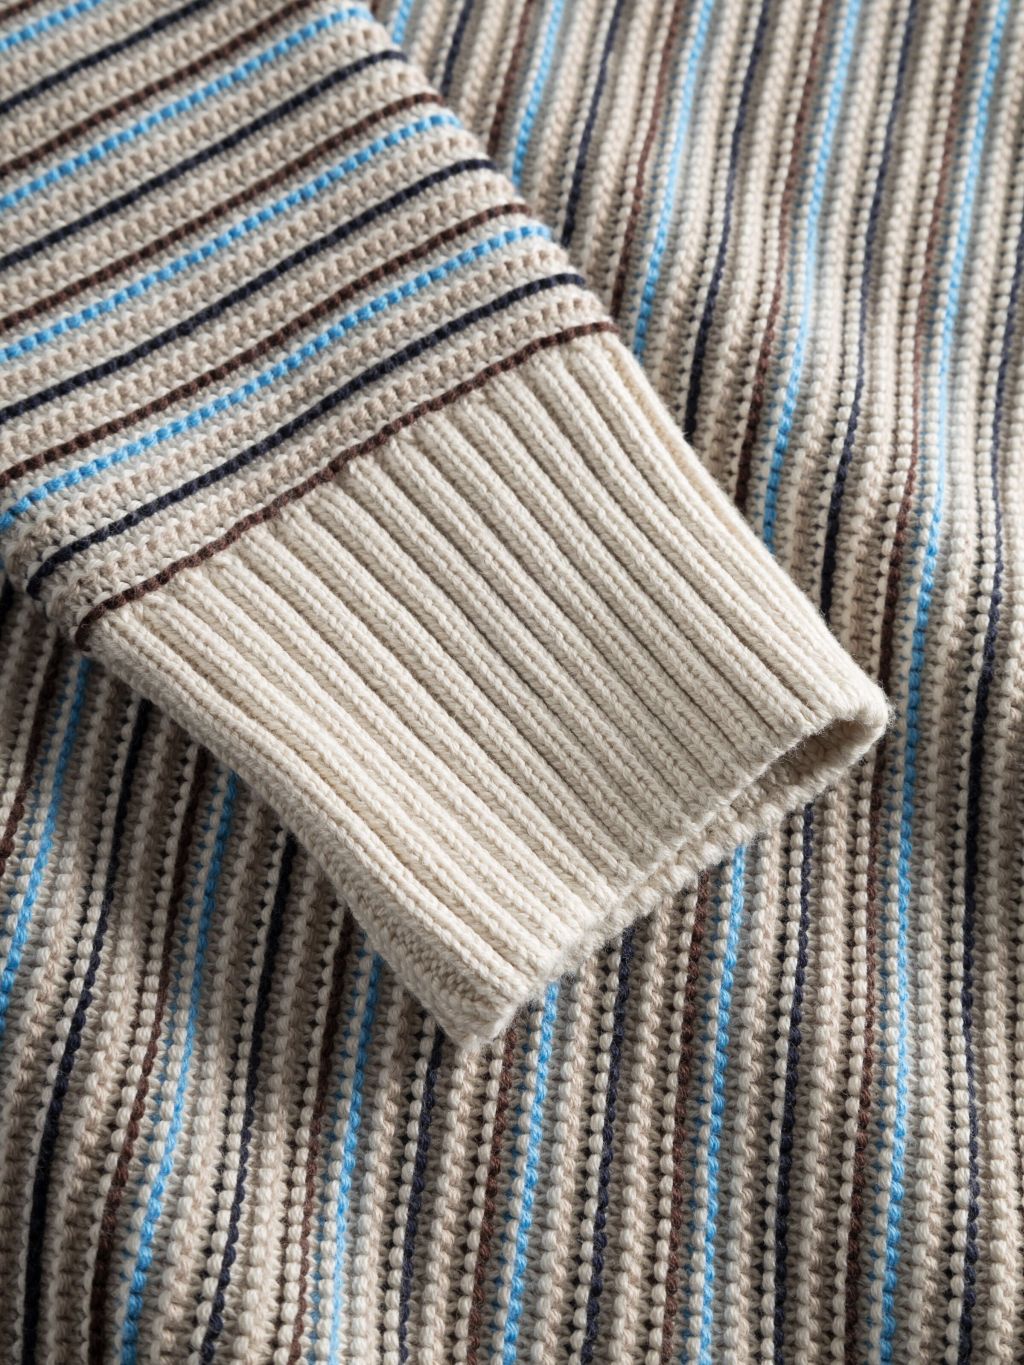 Cotton Striped Knitted Crew Neck Beige Stripe XL